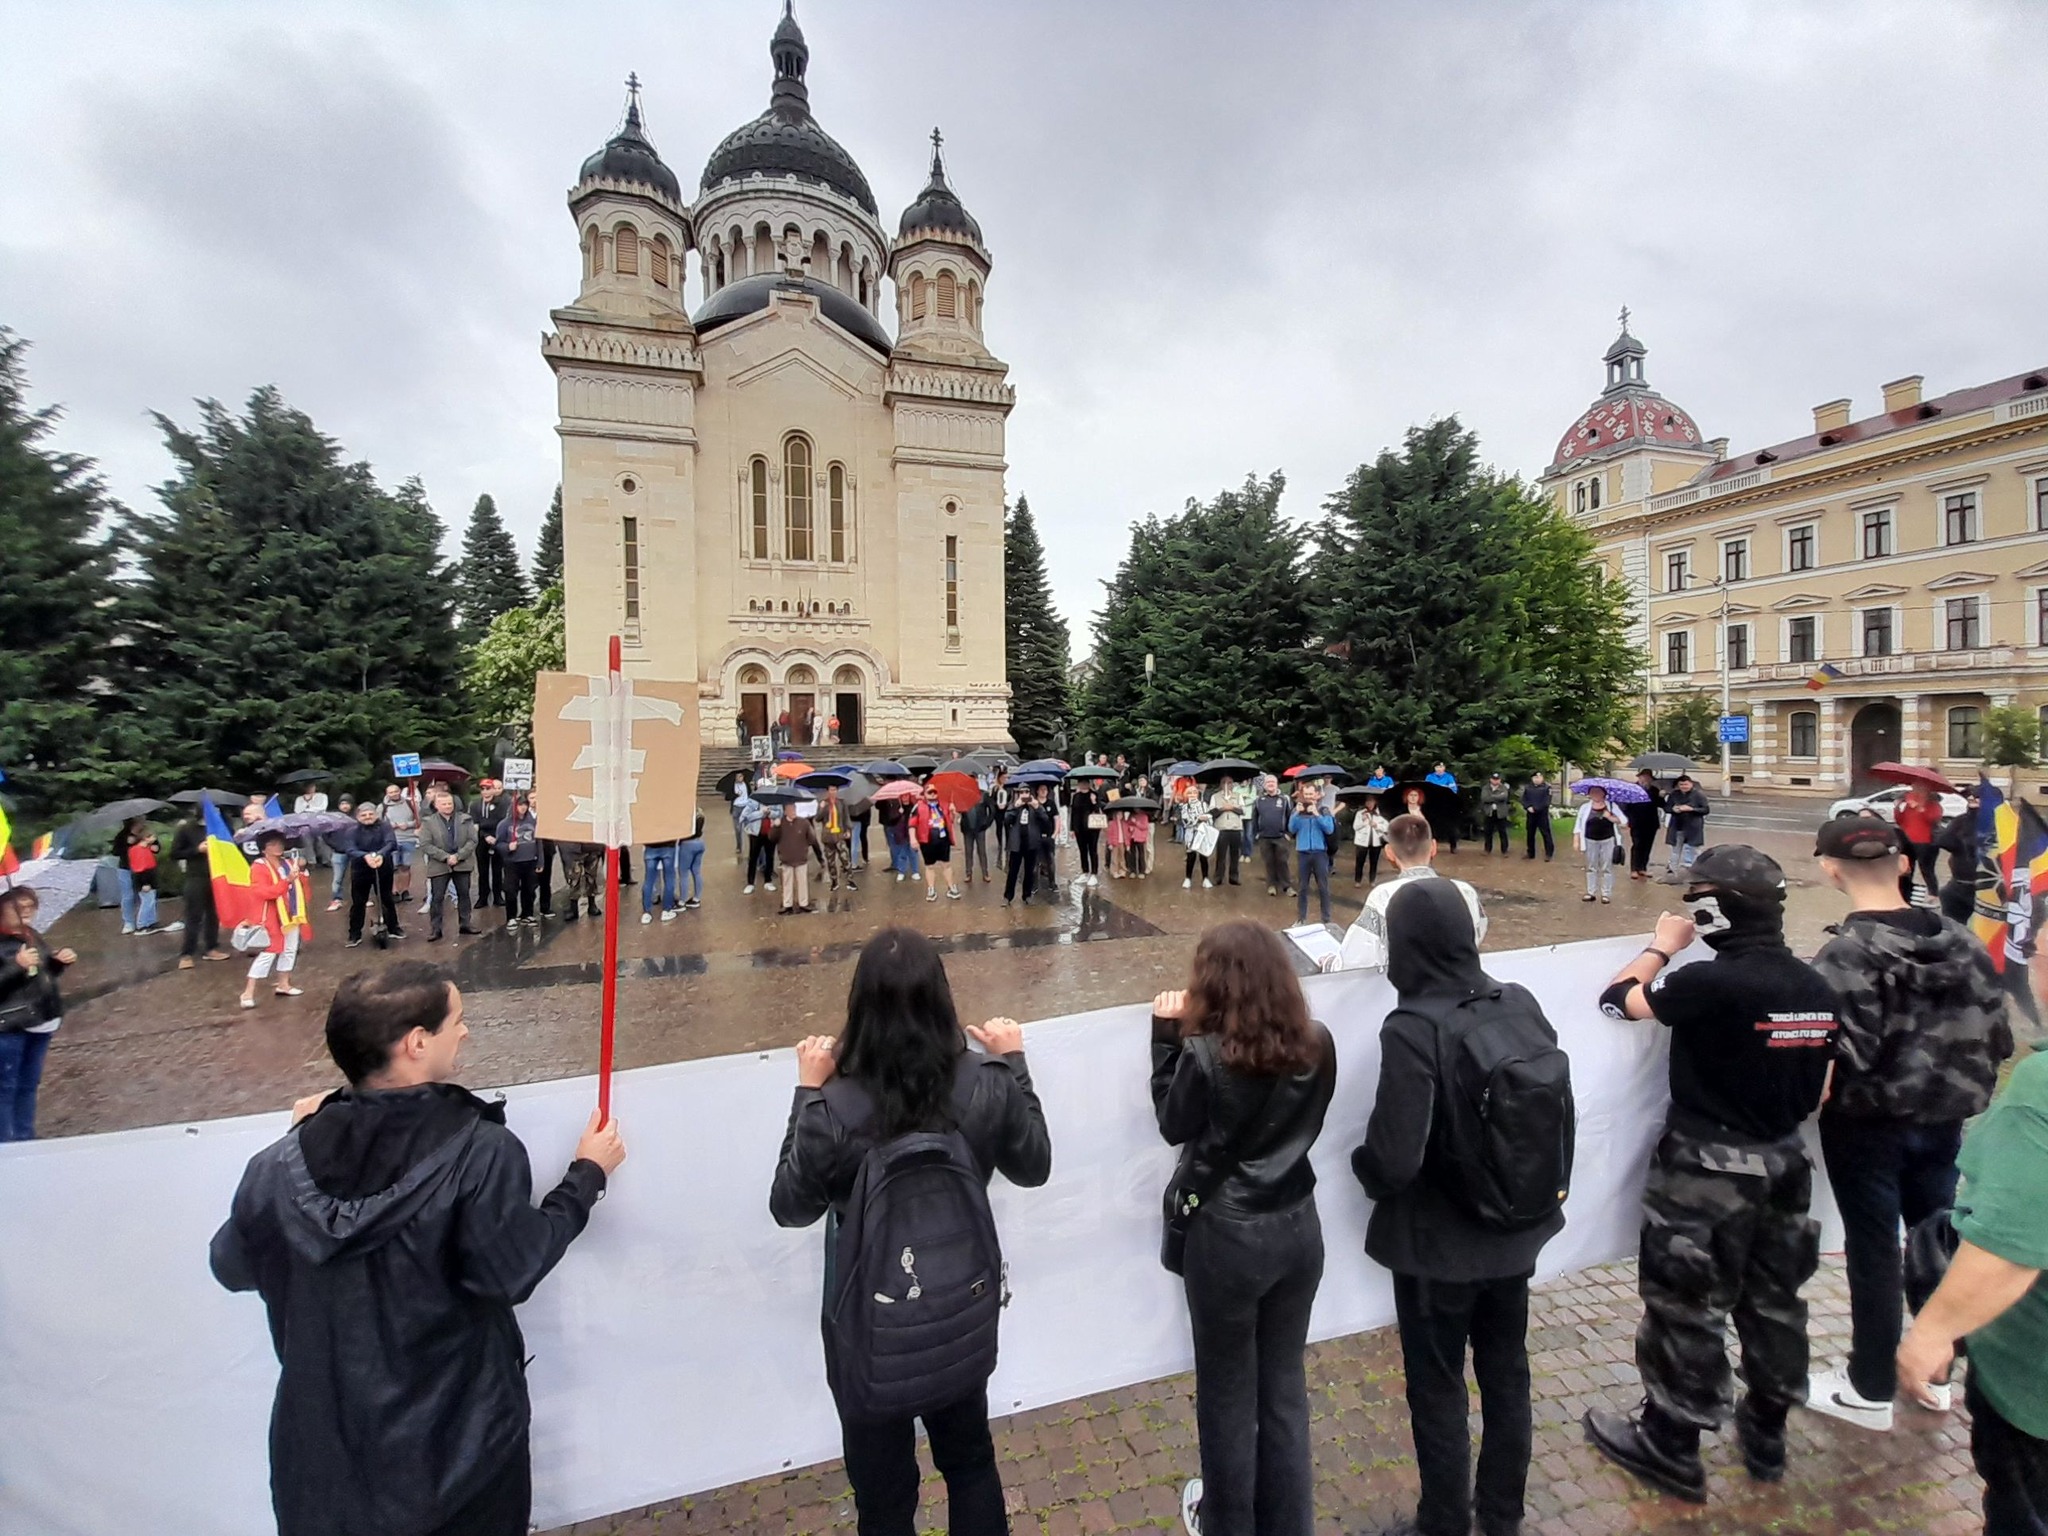 Interes scăzut la „Mitingul pentru familie” din Cluj-Napoca. Primarul Emil Boc, atacat că tolerează marșul LGBT în centrul orașului – VIDEO